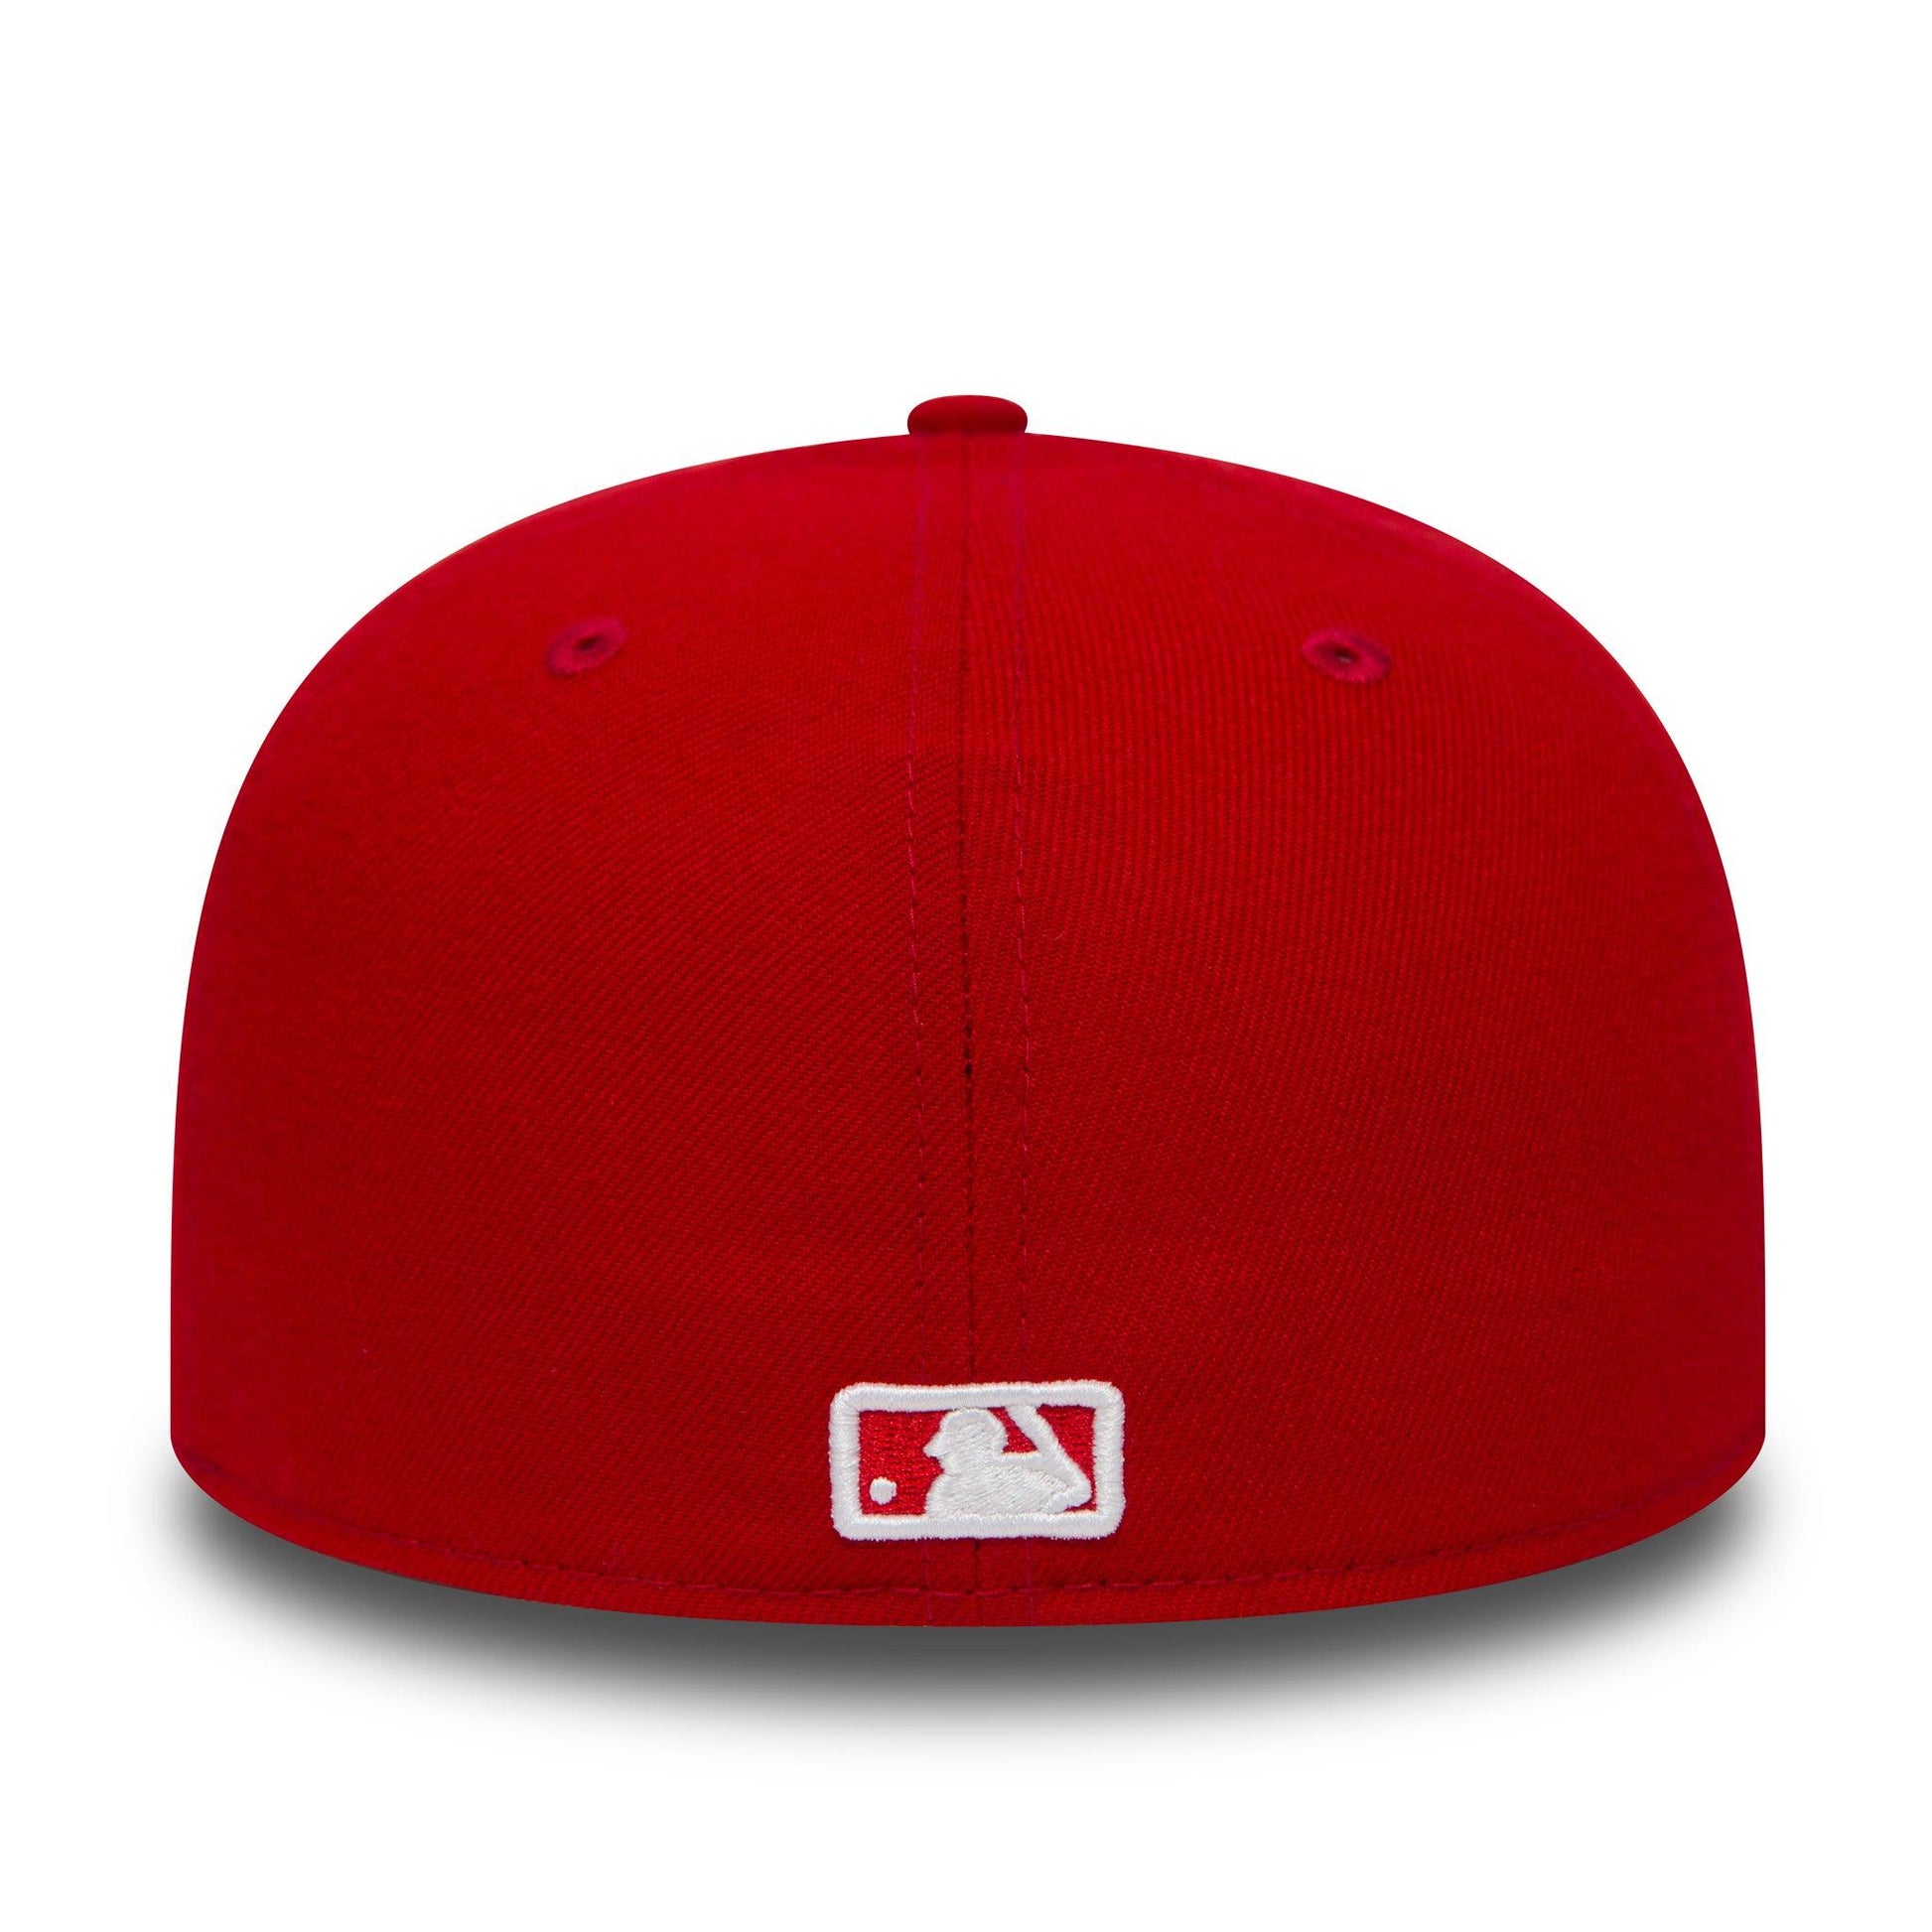 New Era Cap MLB NY Yankees Black Red 59FIFTY Hat